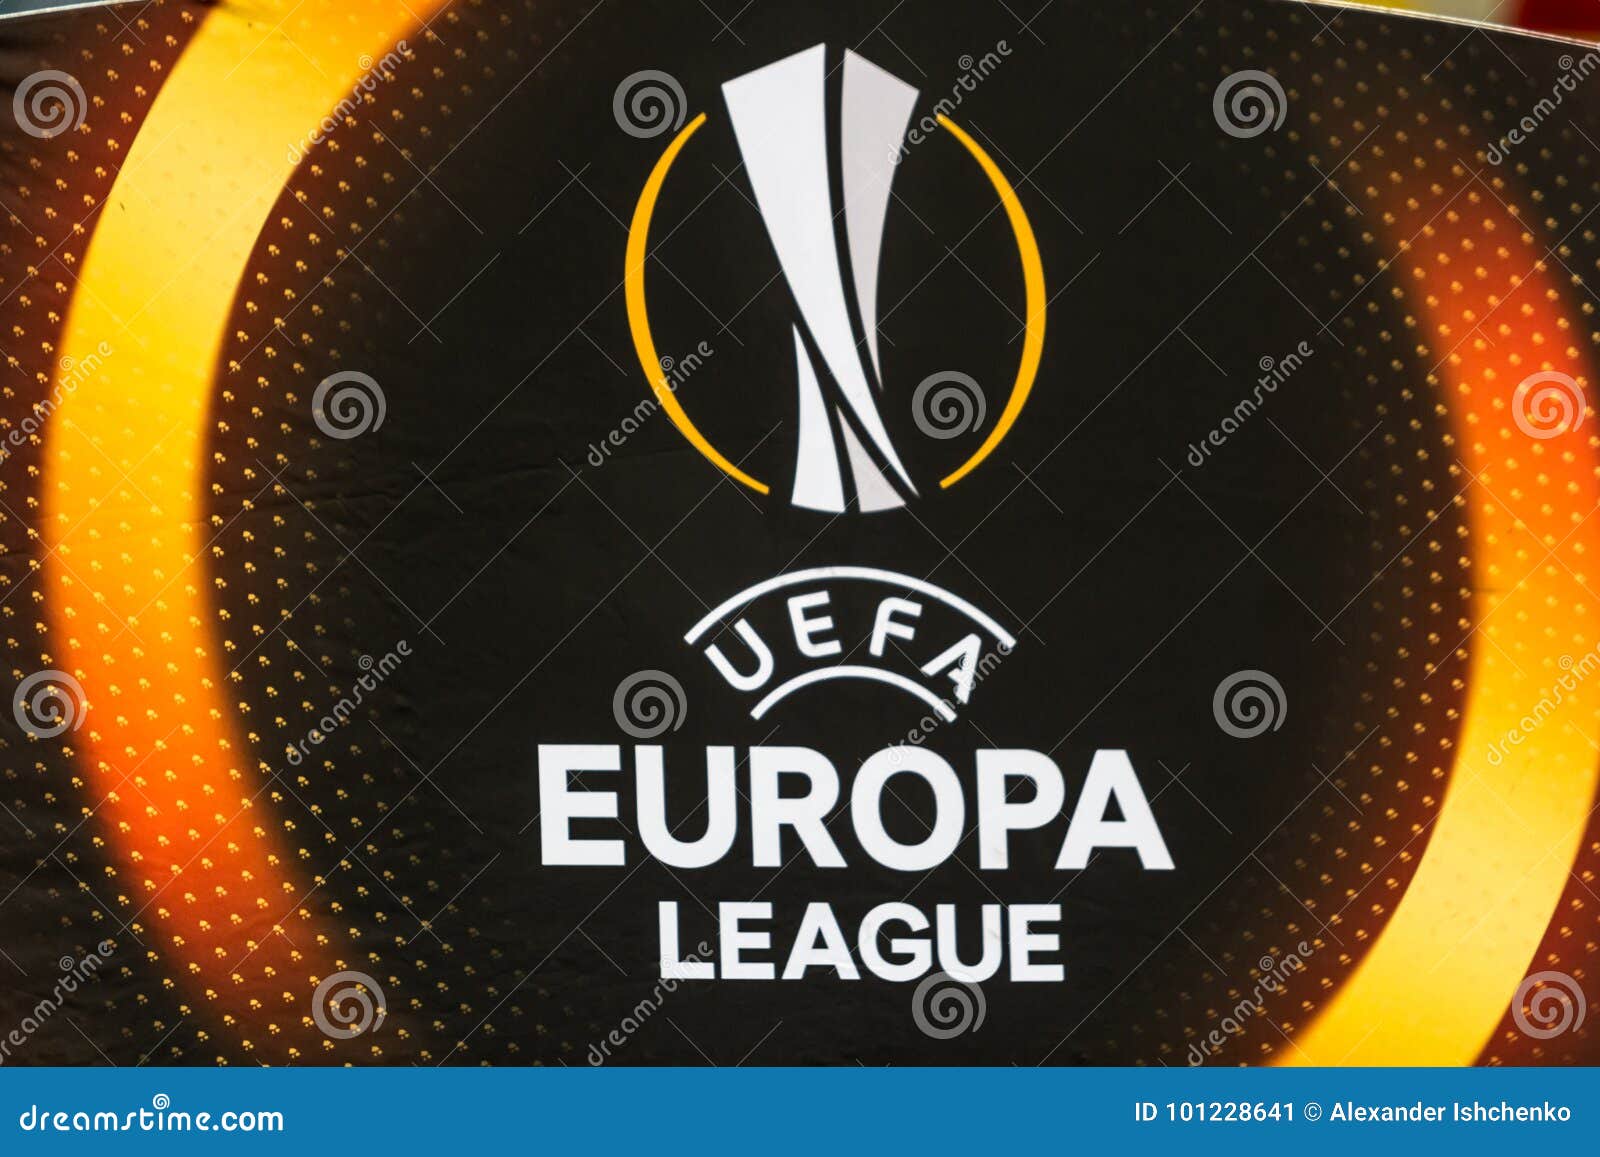 32,521 Europa League Football Stock Photos